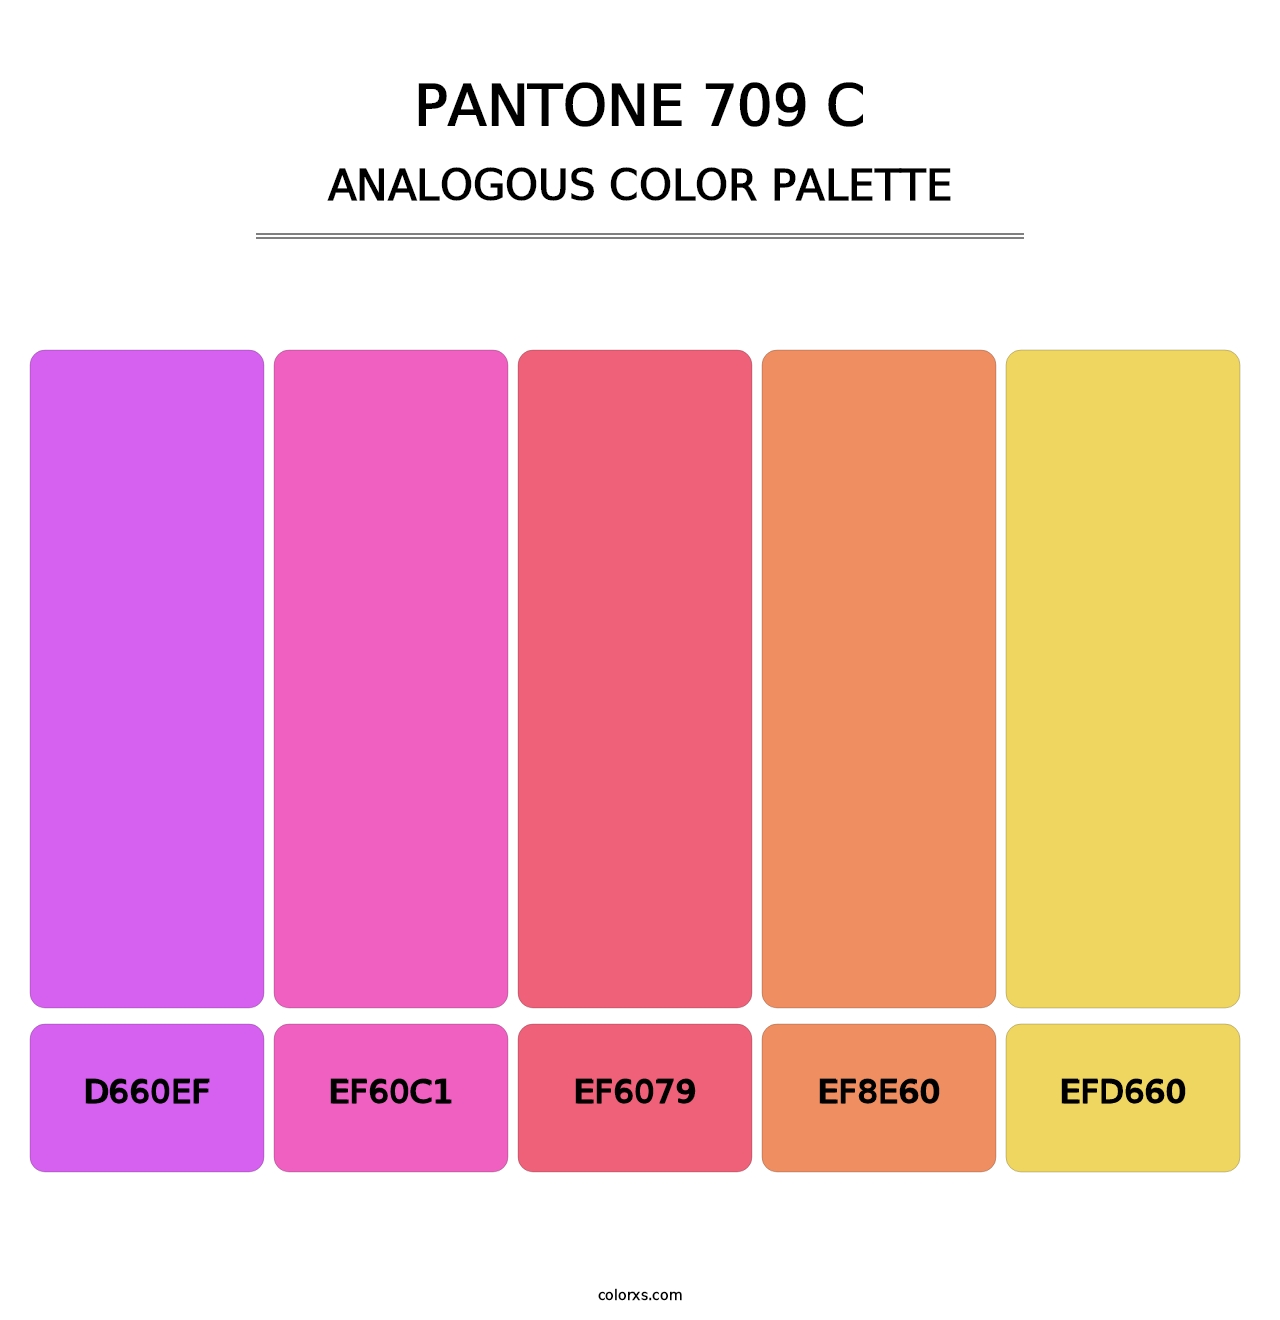 PANTONE 709 C - Analogous Color Palette